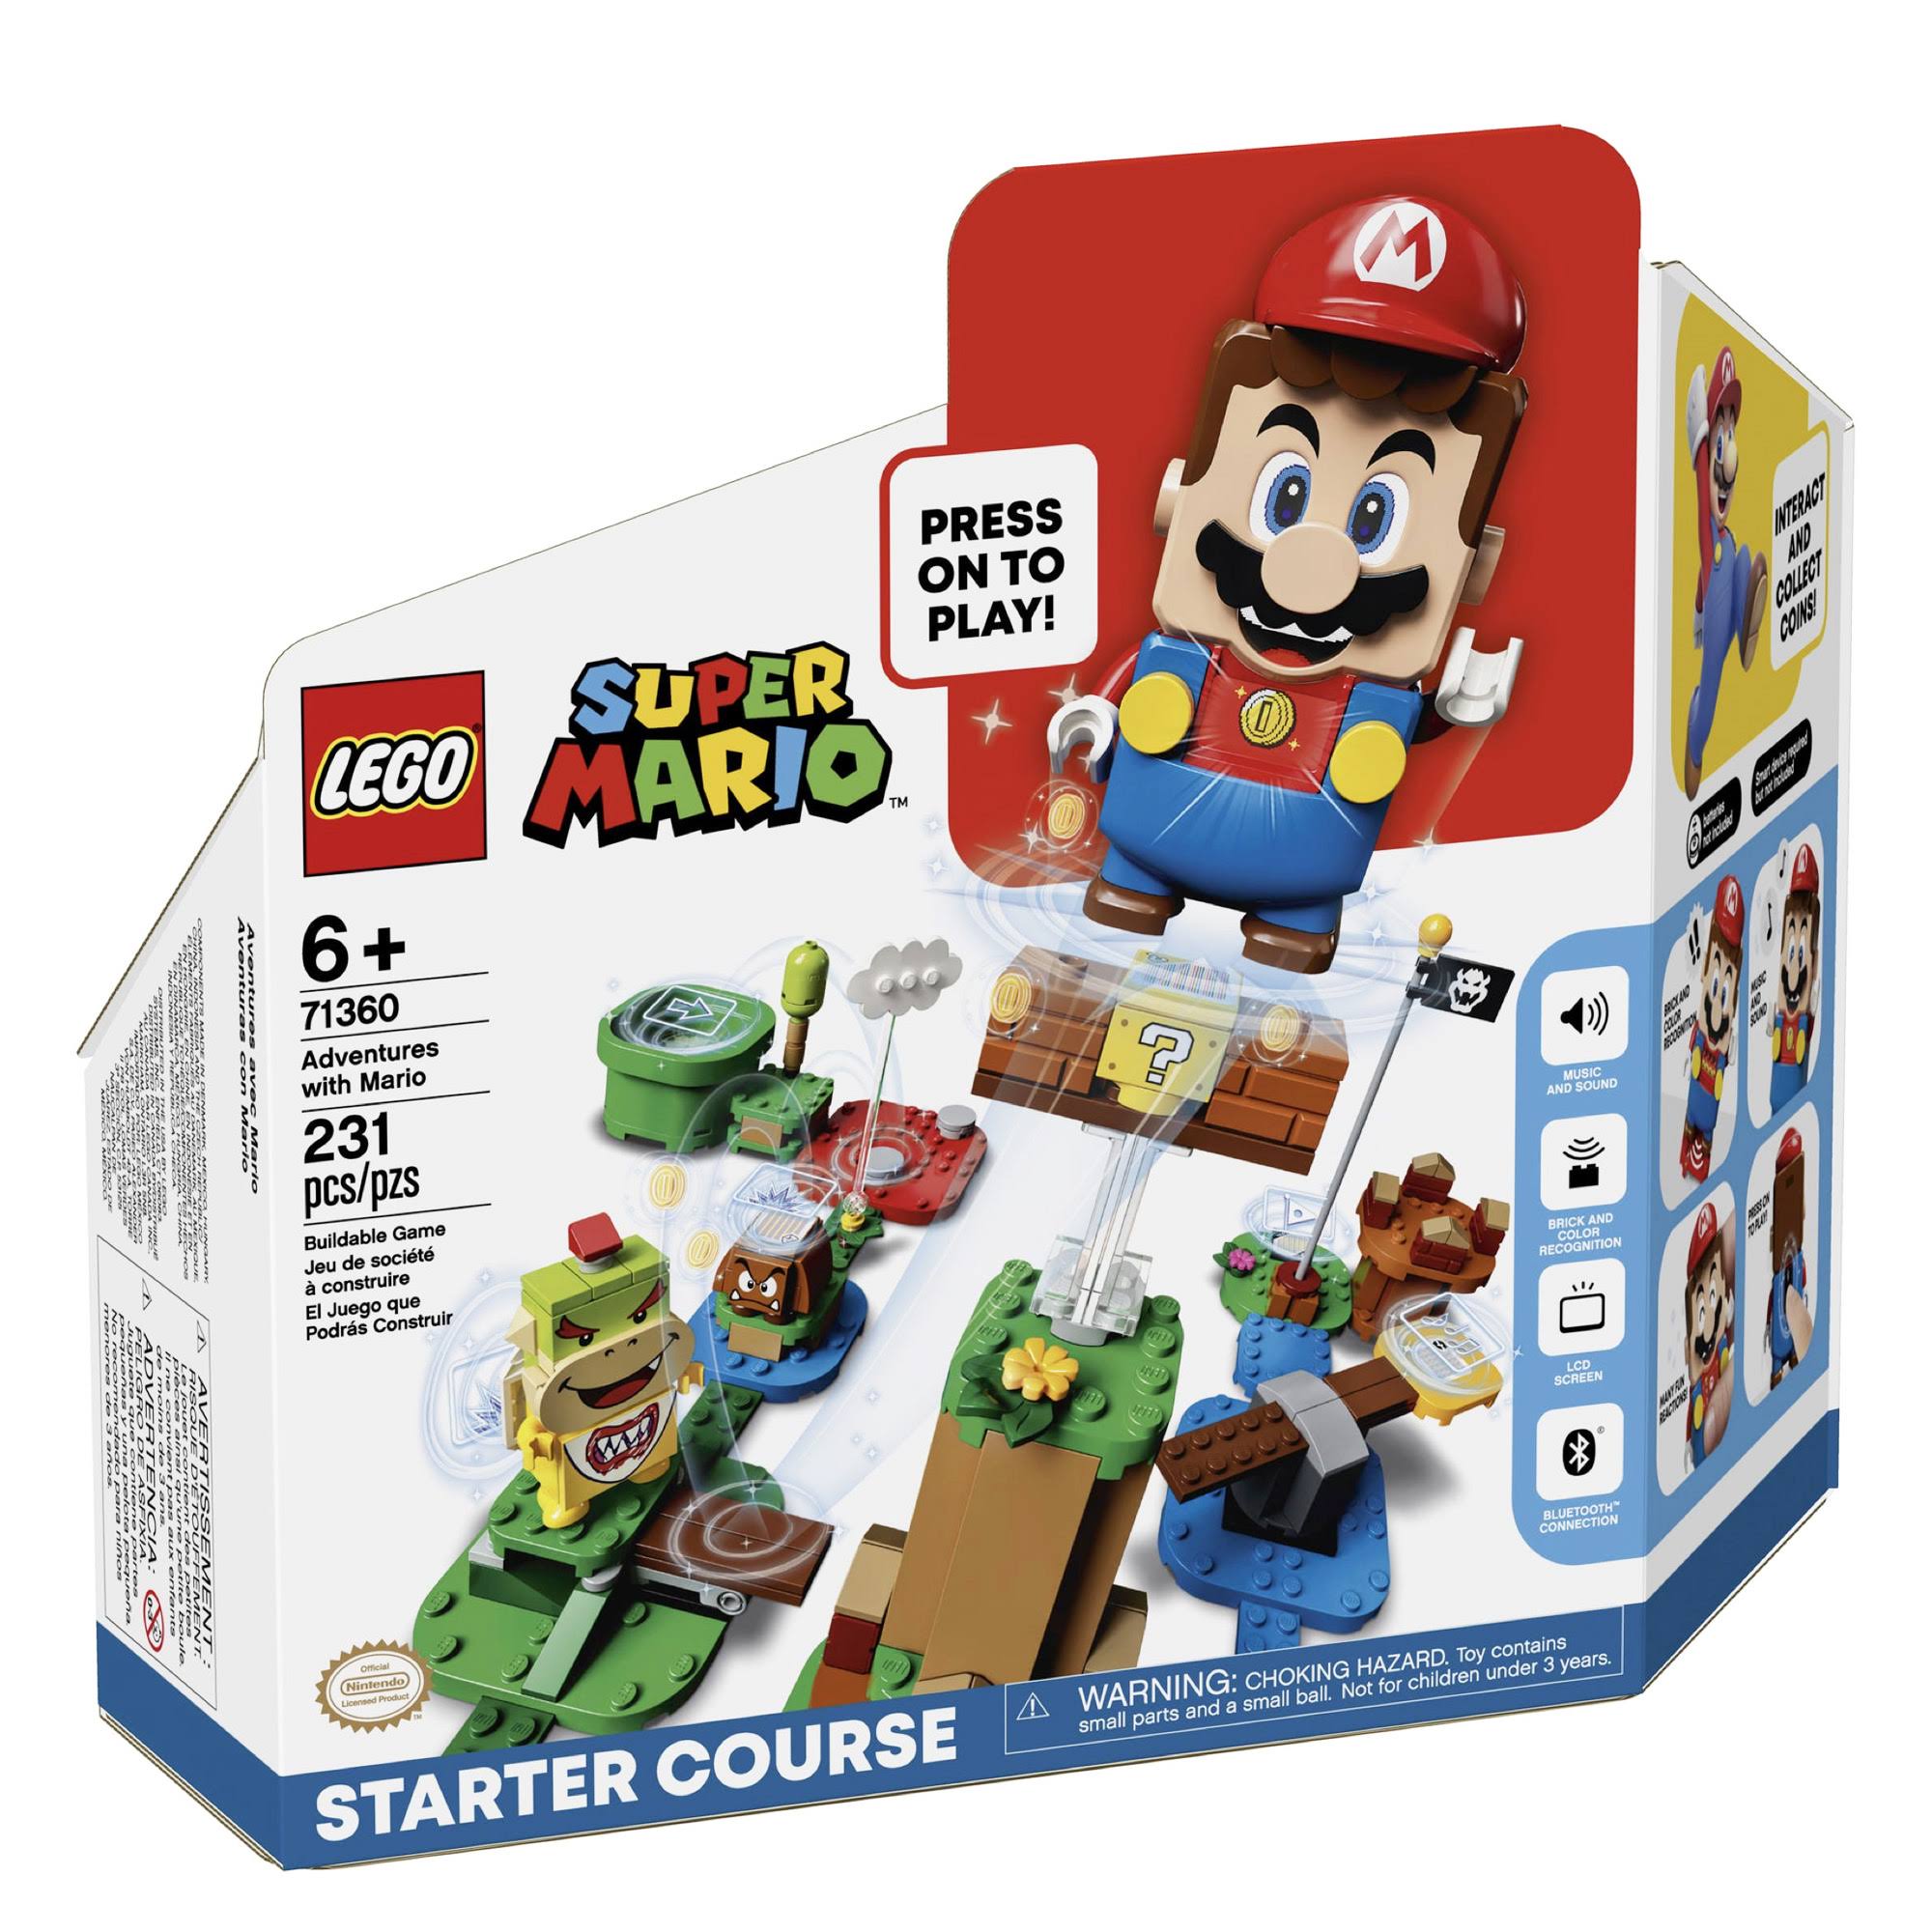 LEGO 71360 Adventures with Mario Starter Course - Super Mario